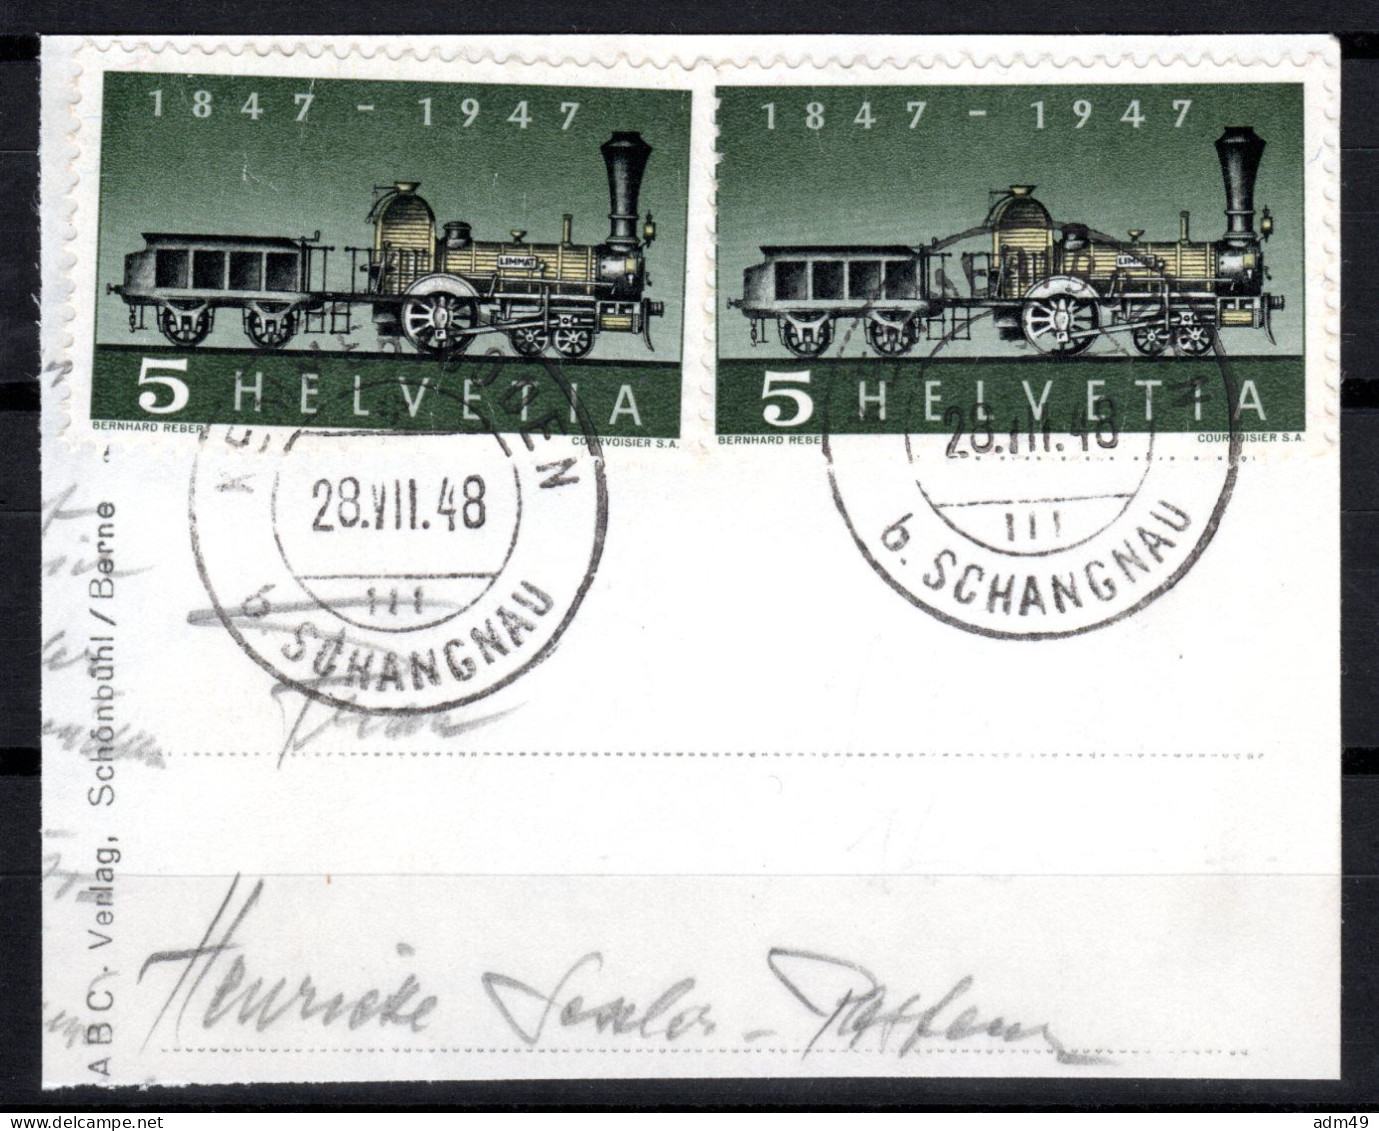 SCHWEIZ ABARTEN, 1947 Erste Dampflokomotive, Fehlende Speiche, Gestempelt - Errors & Oddities